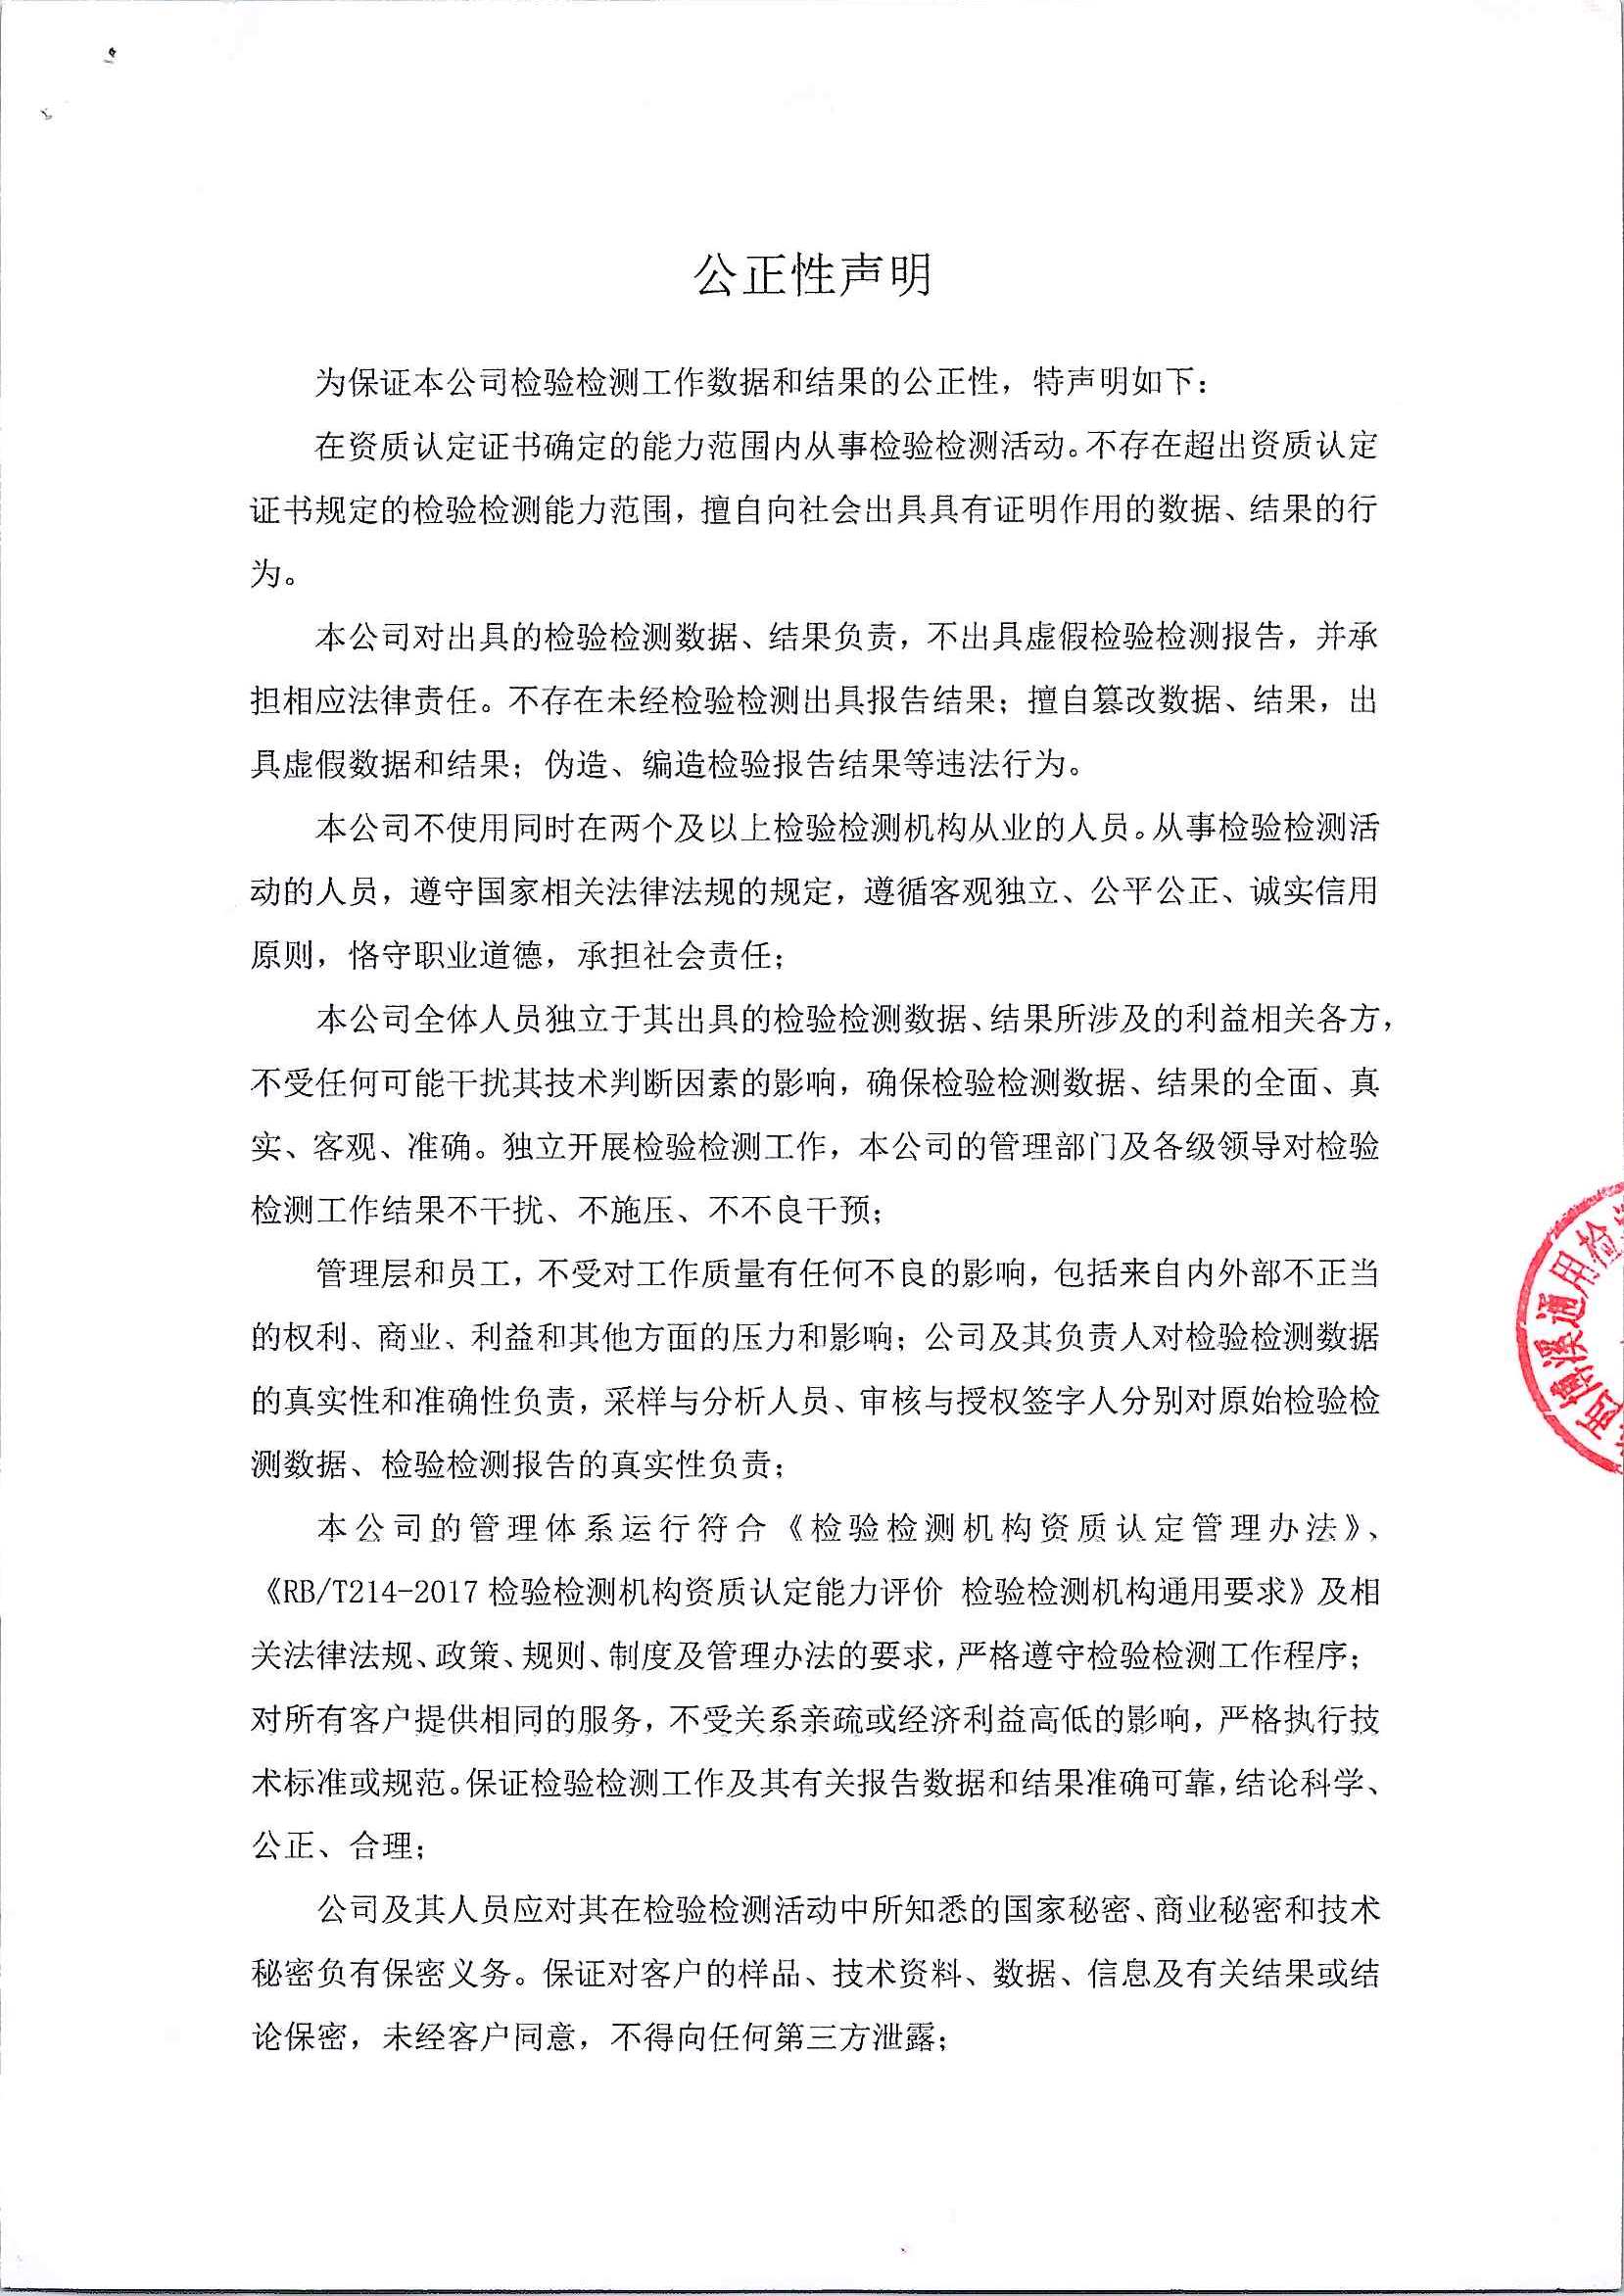 陕西博溪通用检测科技有限公司公正性声明1.png